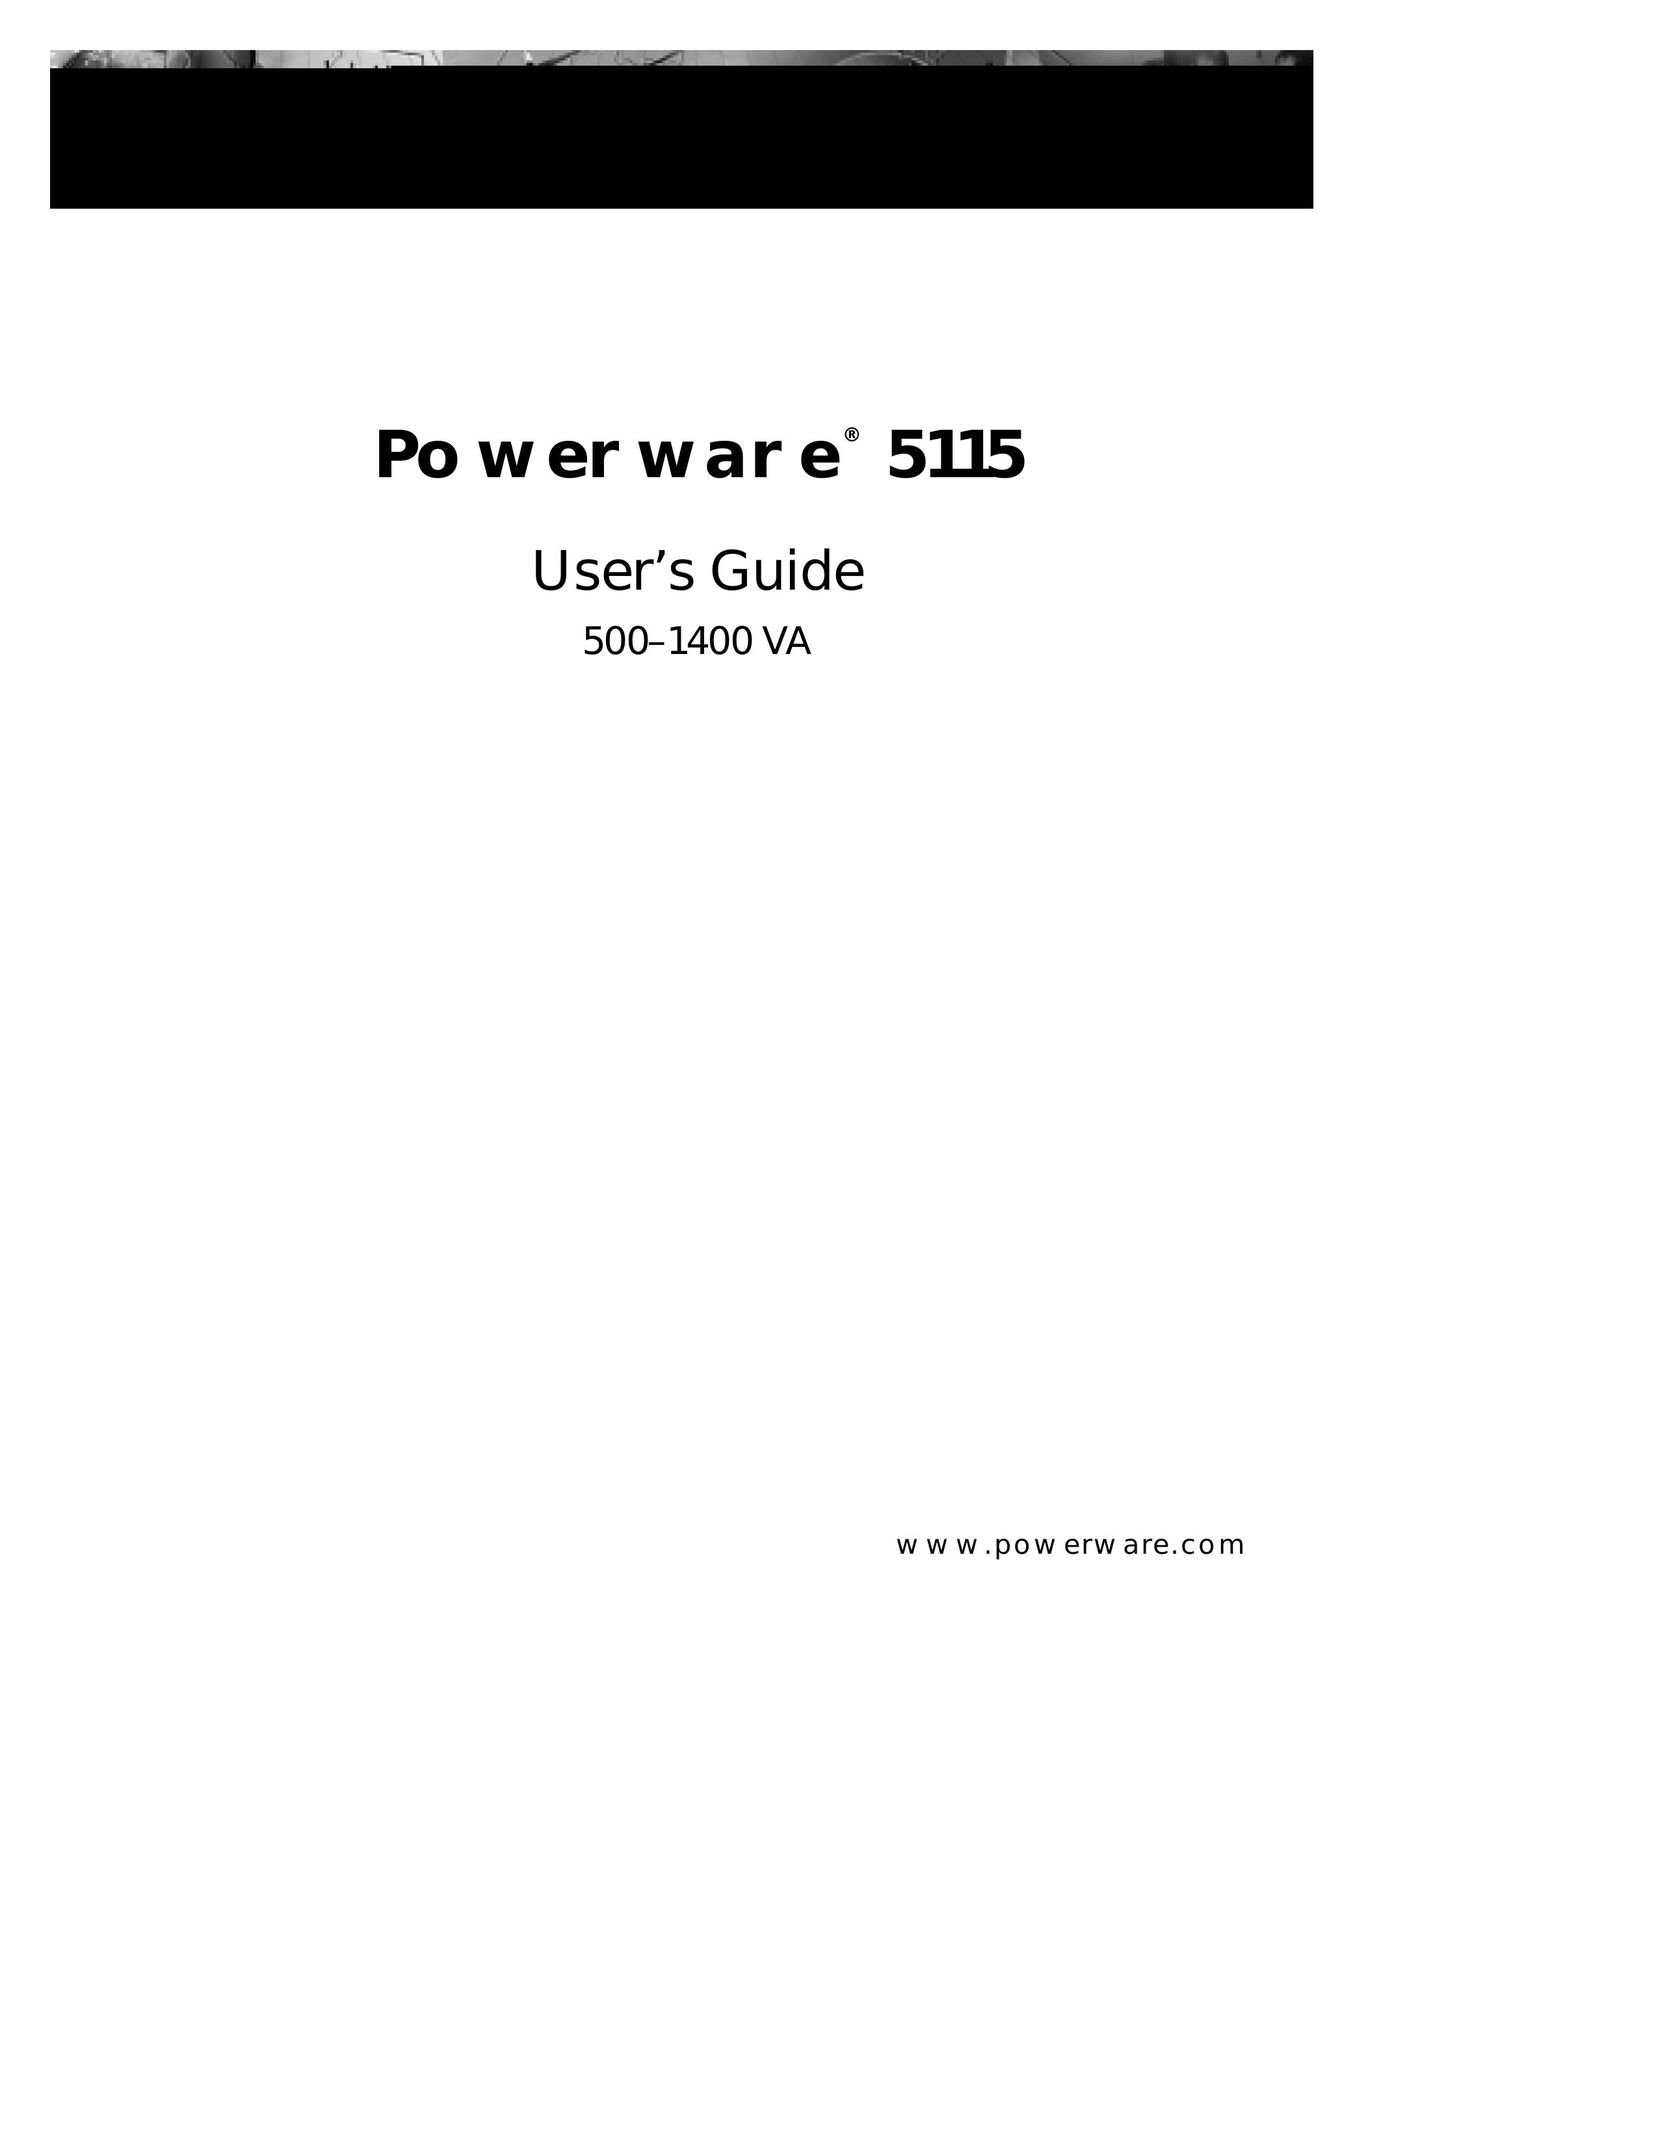 Powerware 5115 Network Card User Manual